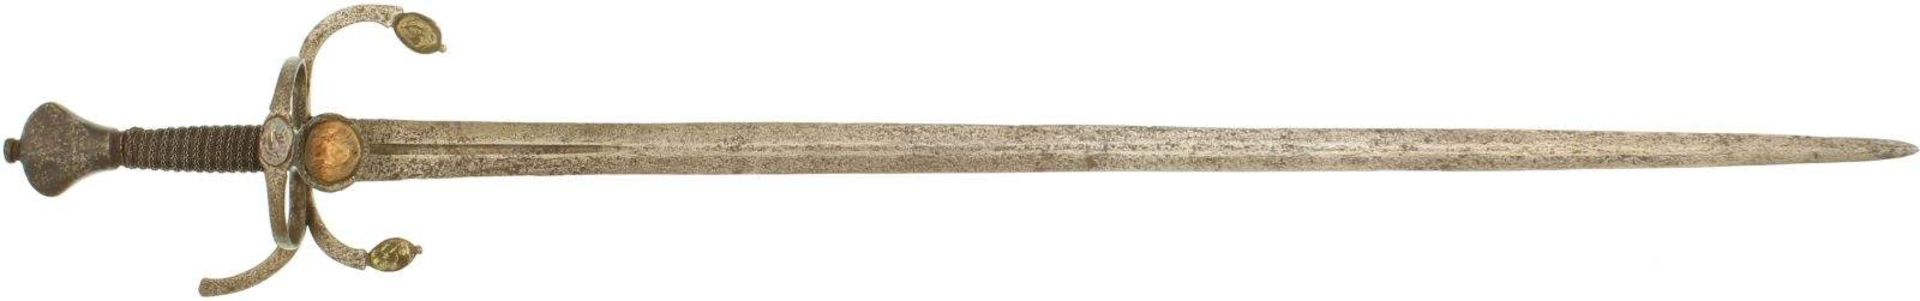 Schwert niederländisch, Ende 16. Jahrhundert. Zweischneidige 87cm lange Klinge mit